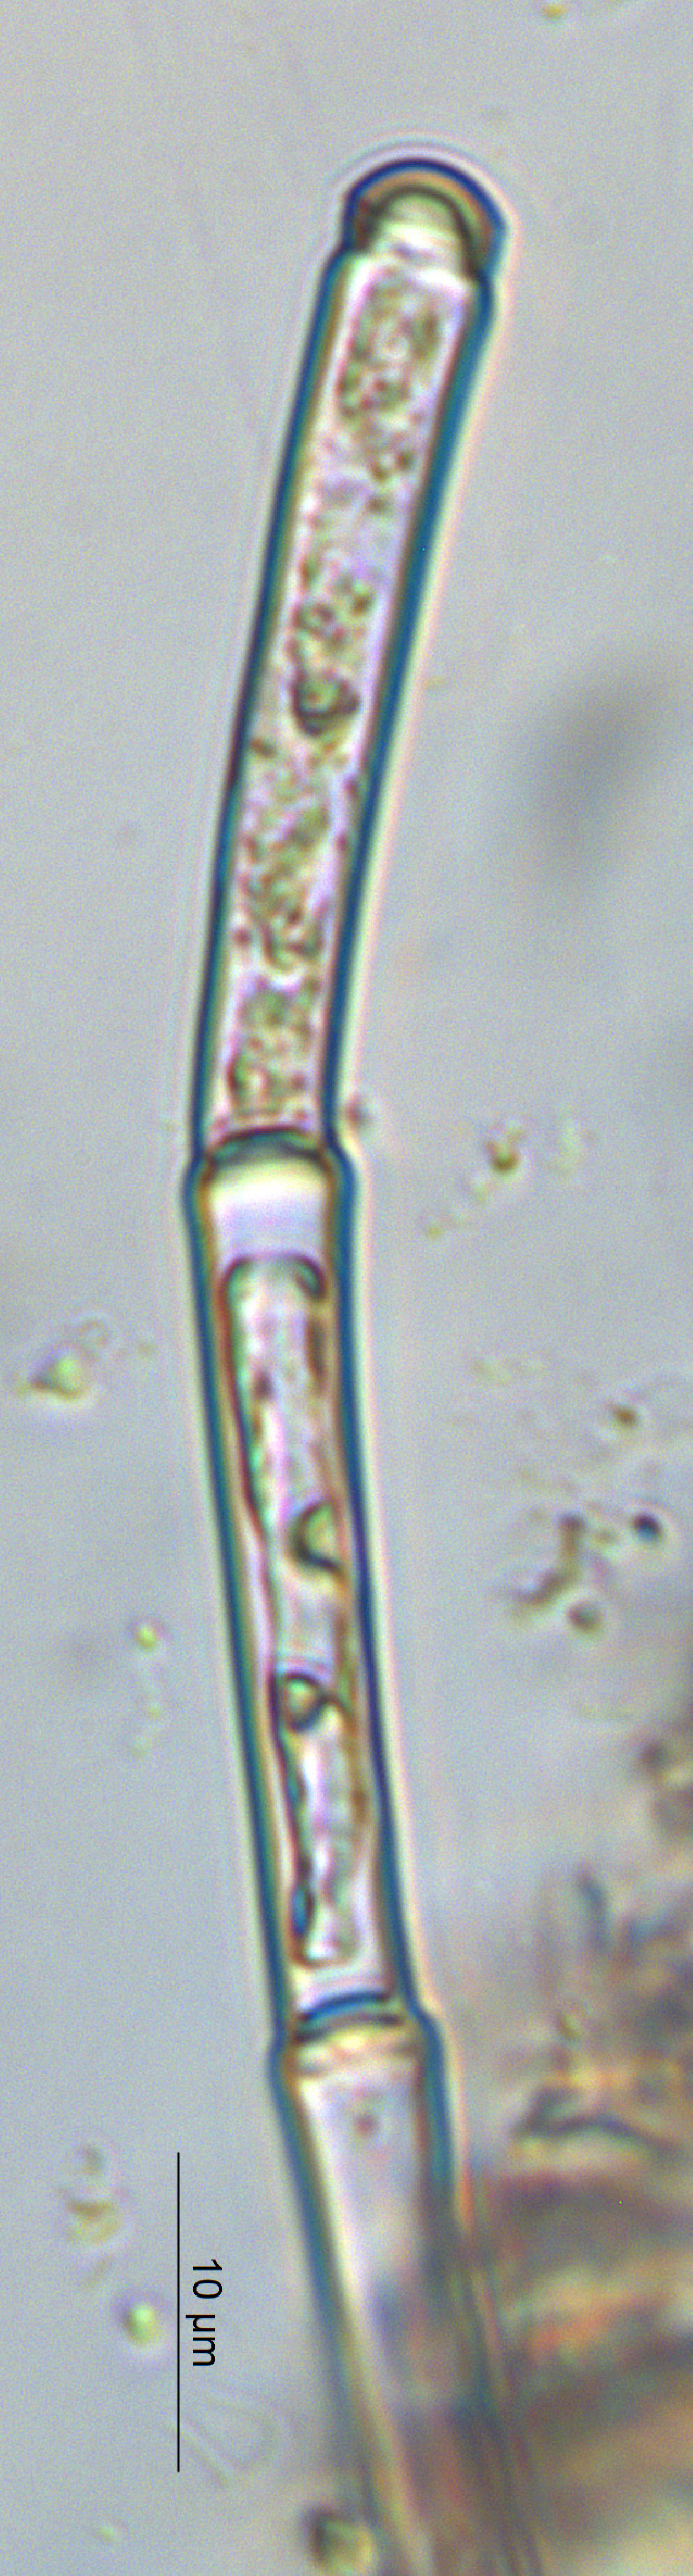 Oedogonium image